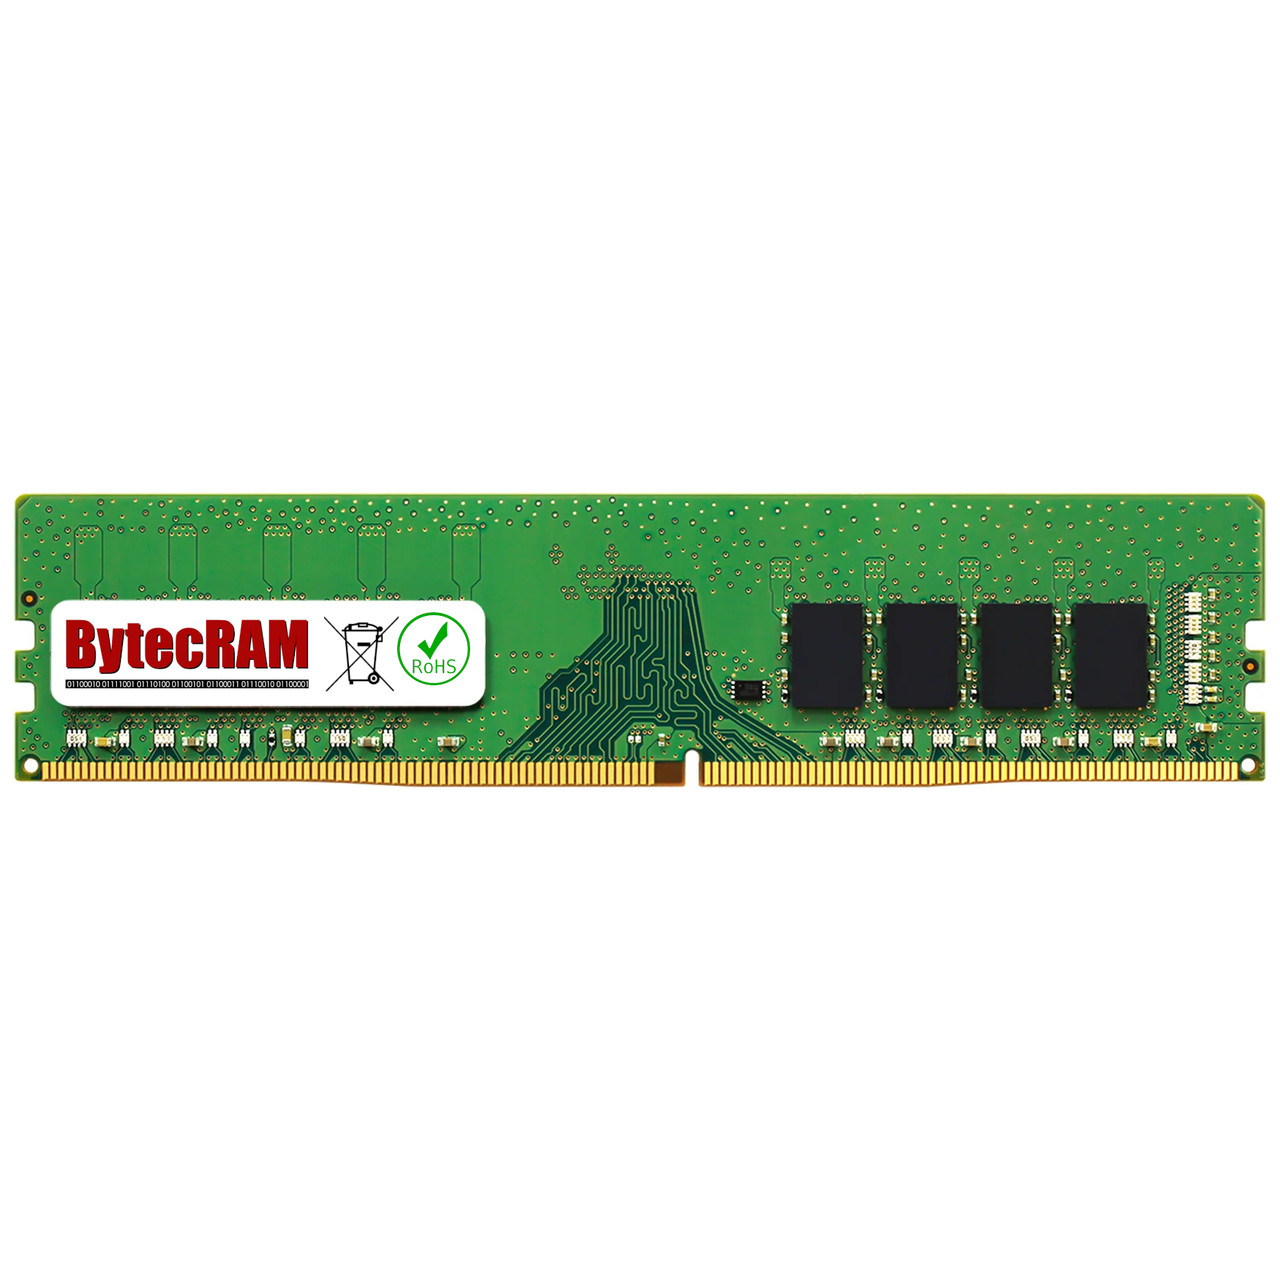 eBay*16GB HP 290 G4 DDR4 3200MHz UDIMM Memory RAM Upgrade